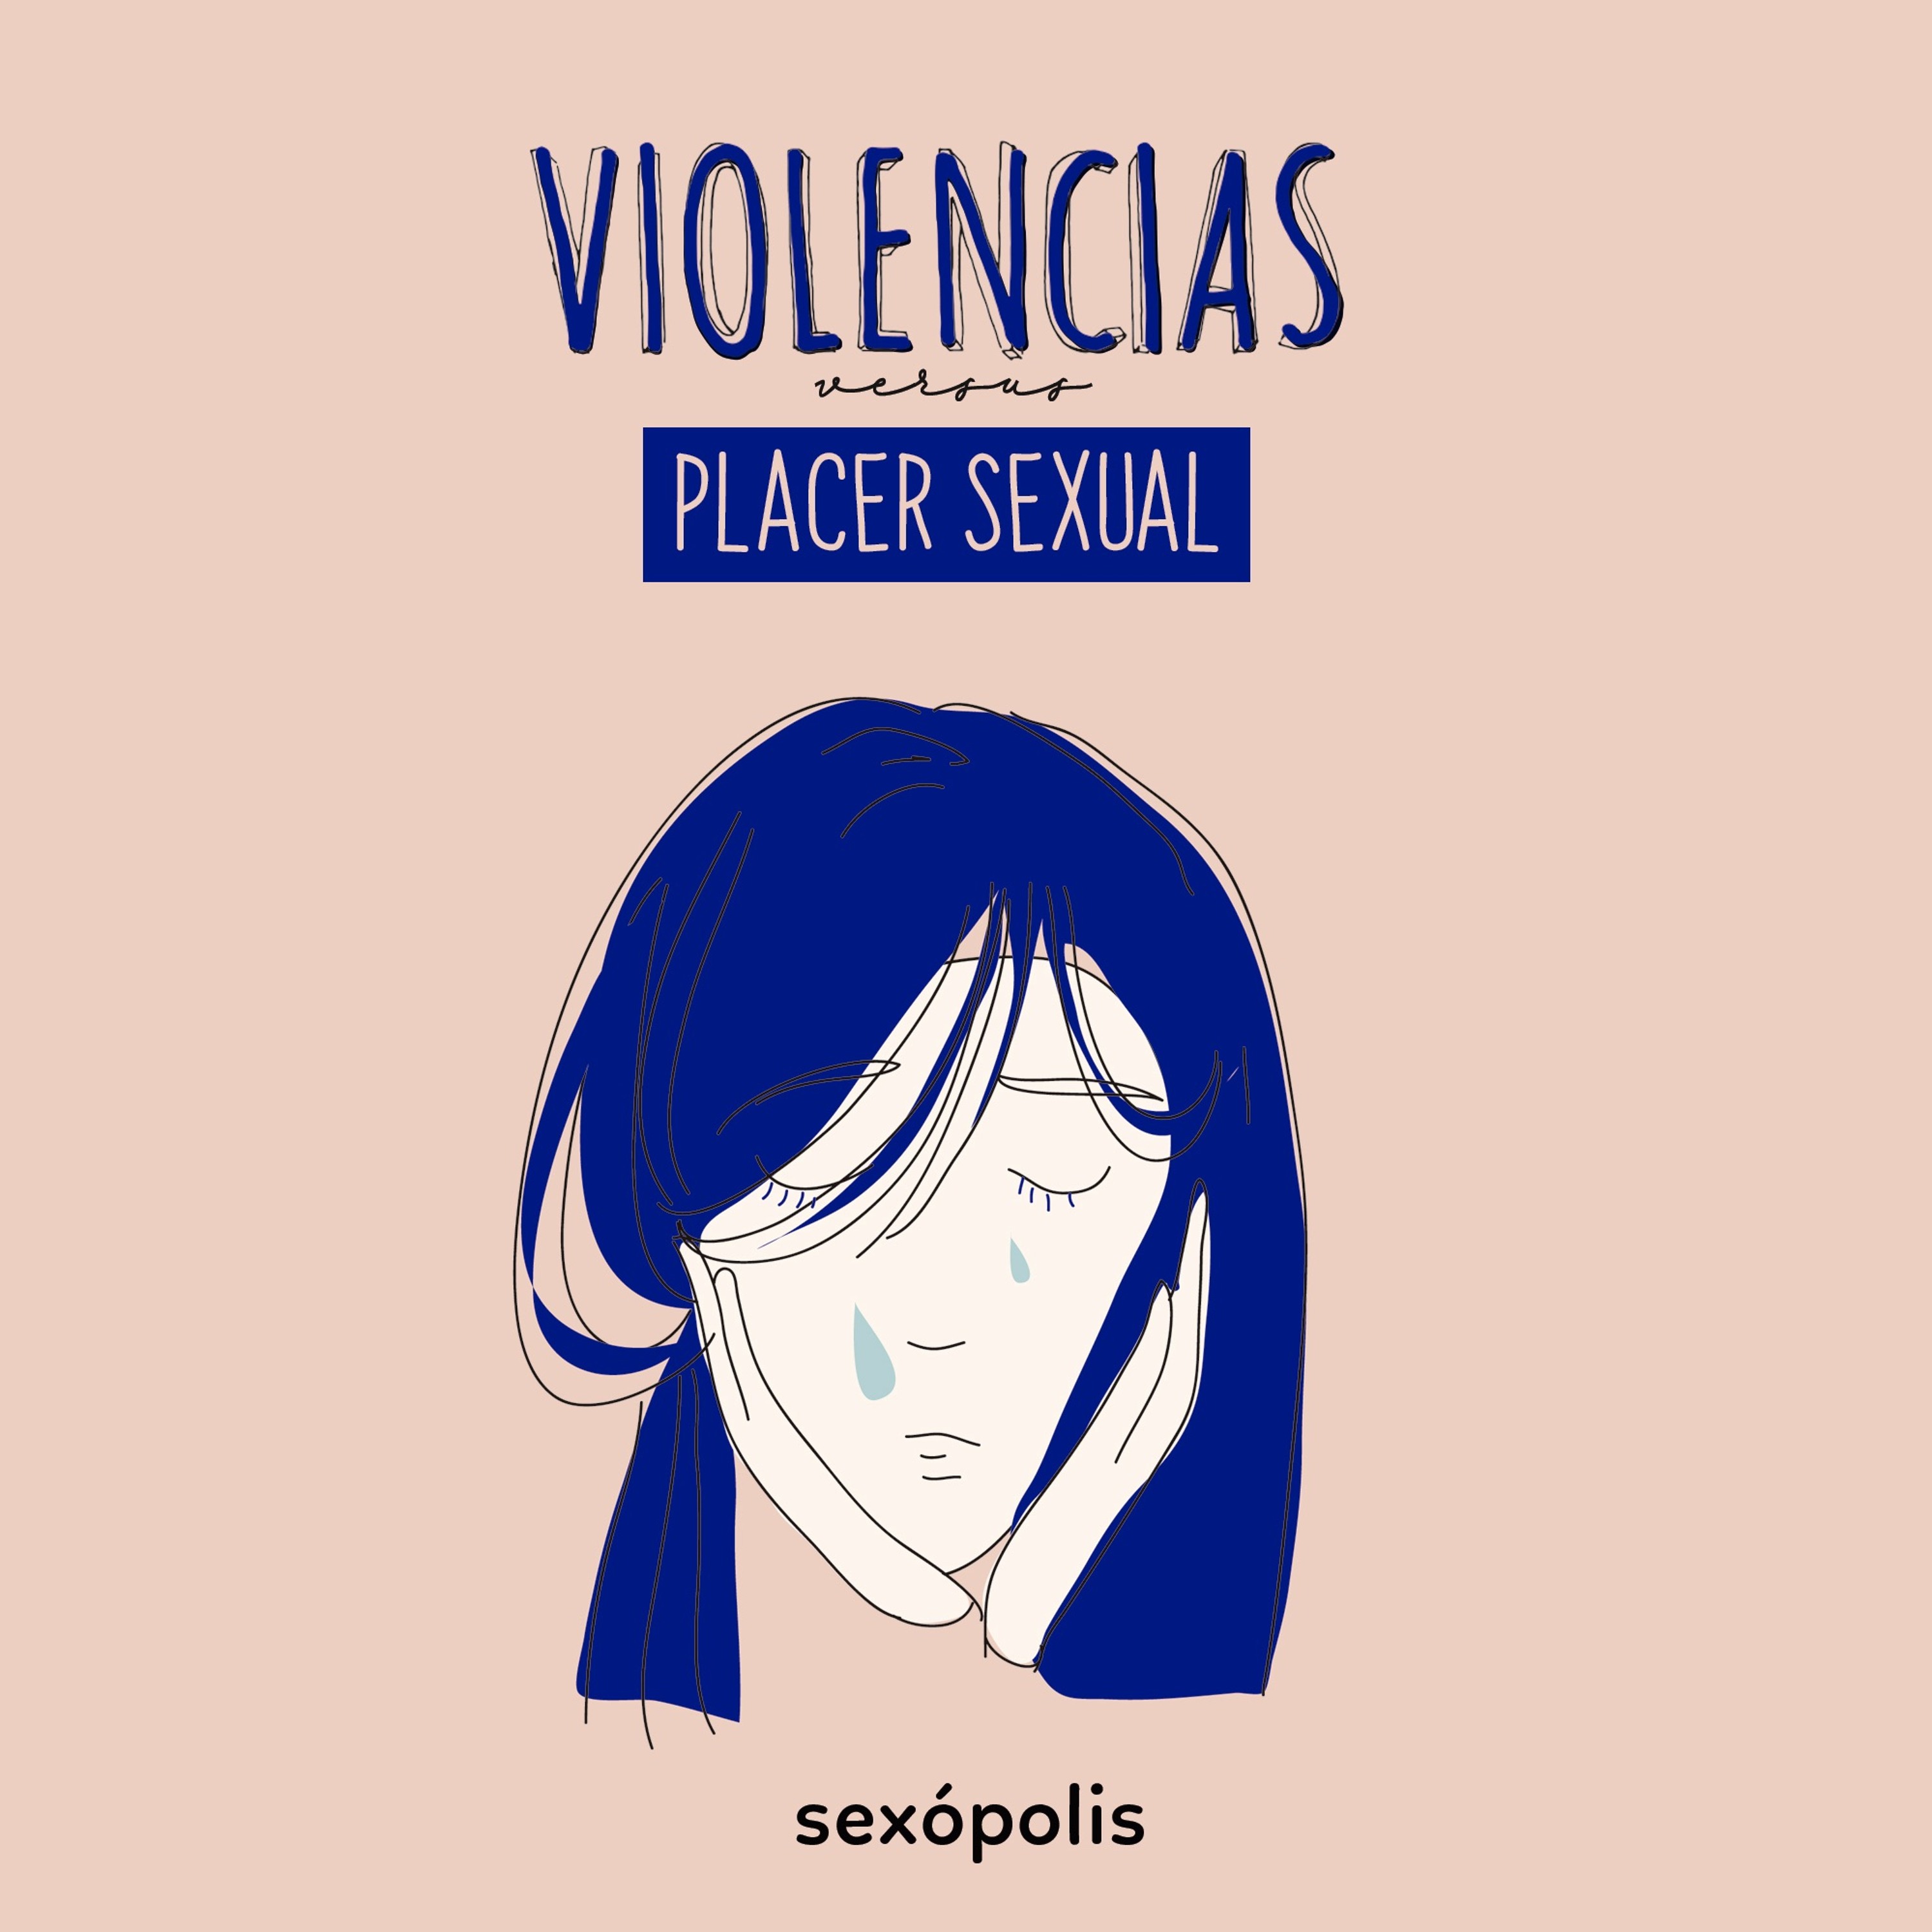 Violencias versus placer sexual